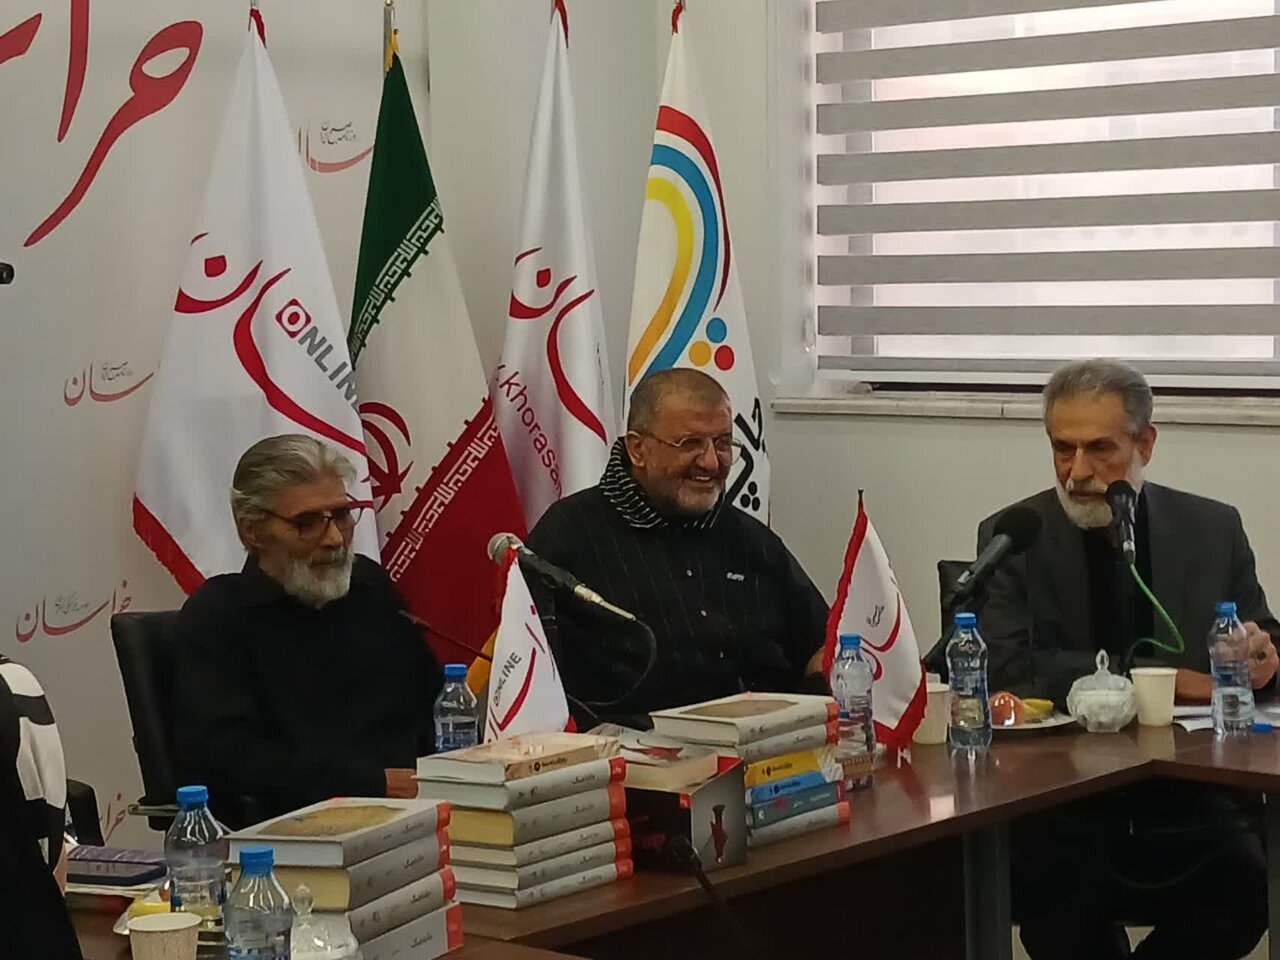 «جاده جنگ» طولانی ترین رمان ایرانی بعد انقلاب است - خبرگزاری مهر | اخبار ایران و جهان